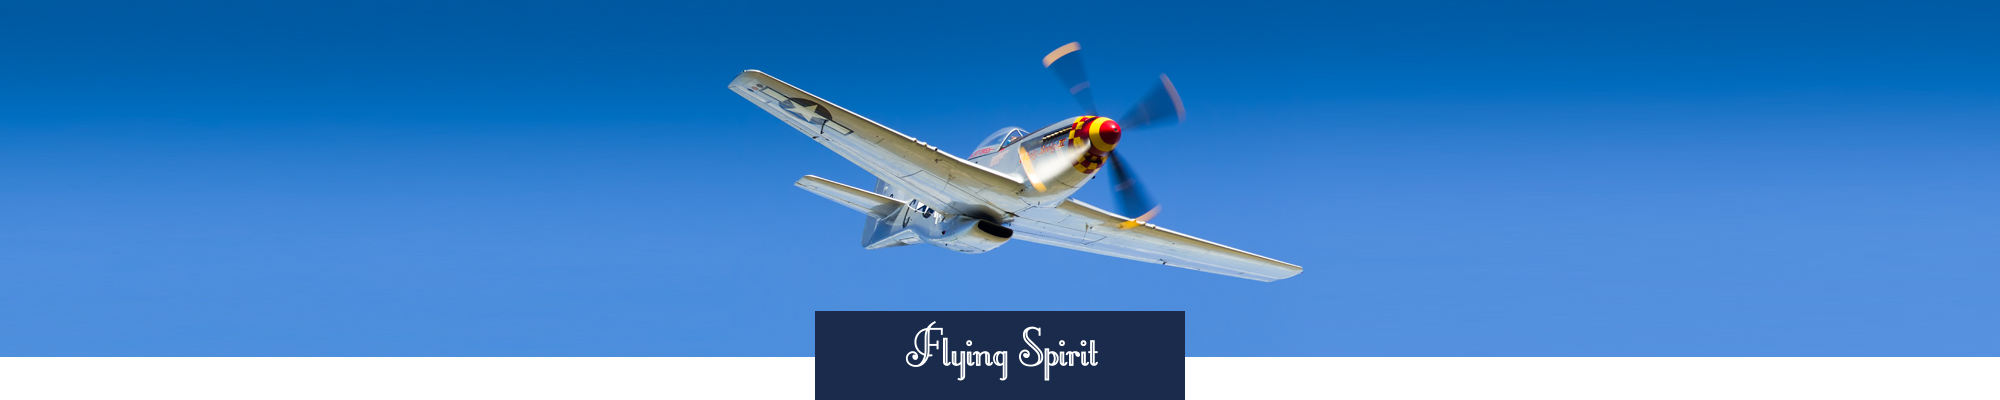 Show aérien Flying Spirit par Bleuciel